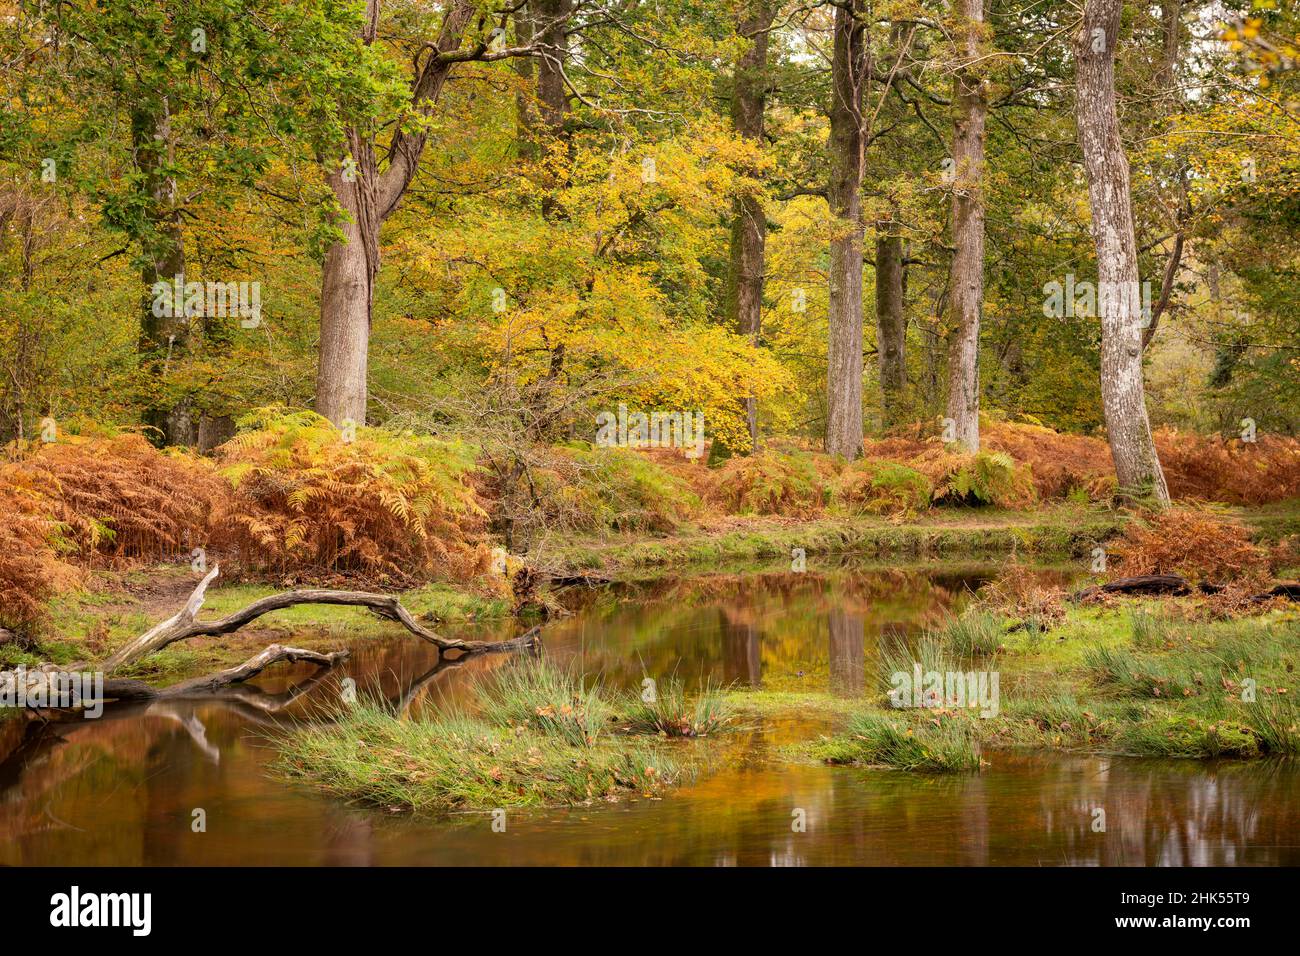 Feuillage d'automne sur les rives de la rivière Black Water dans le parc national de New Forest, Hampshire, Angleterre, Royaume-Uni, Europe Banque D'Images